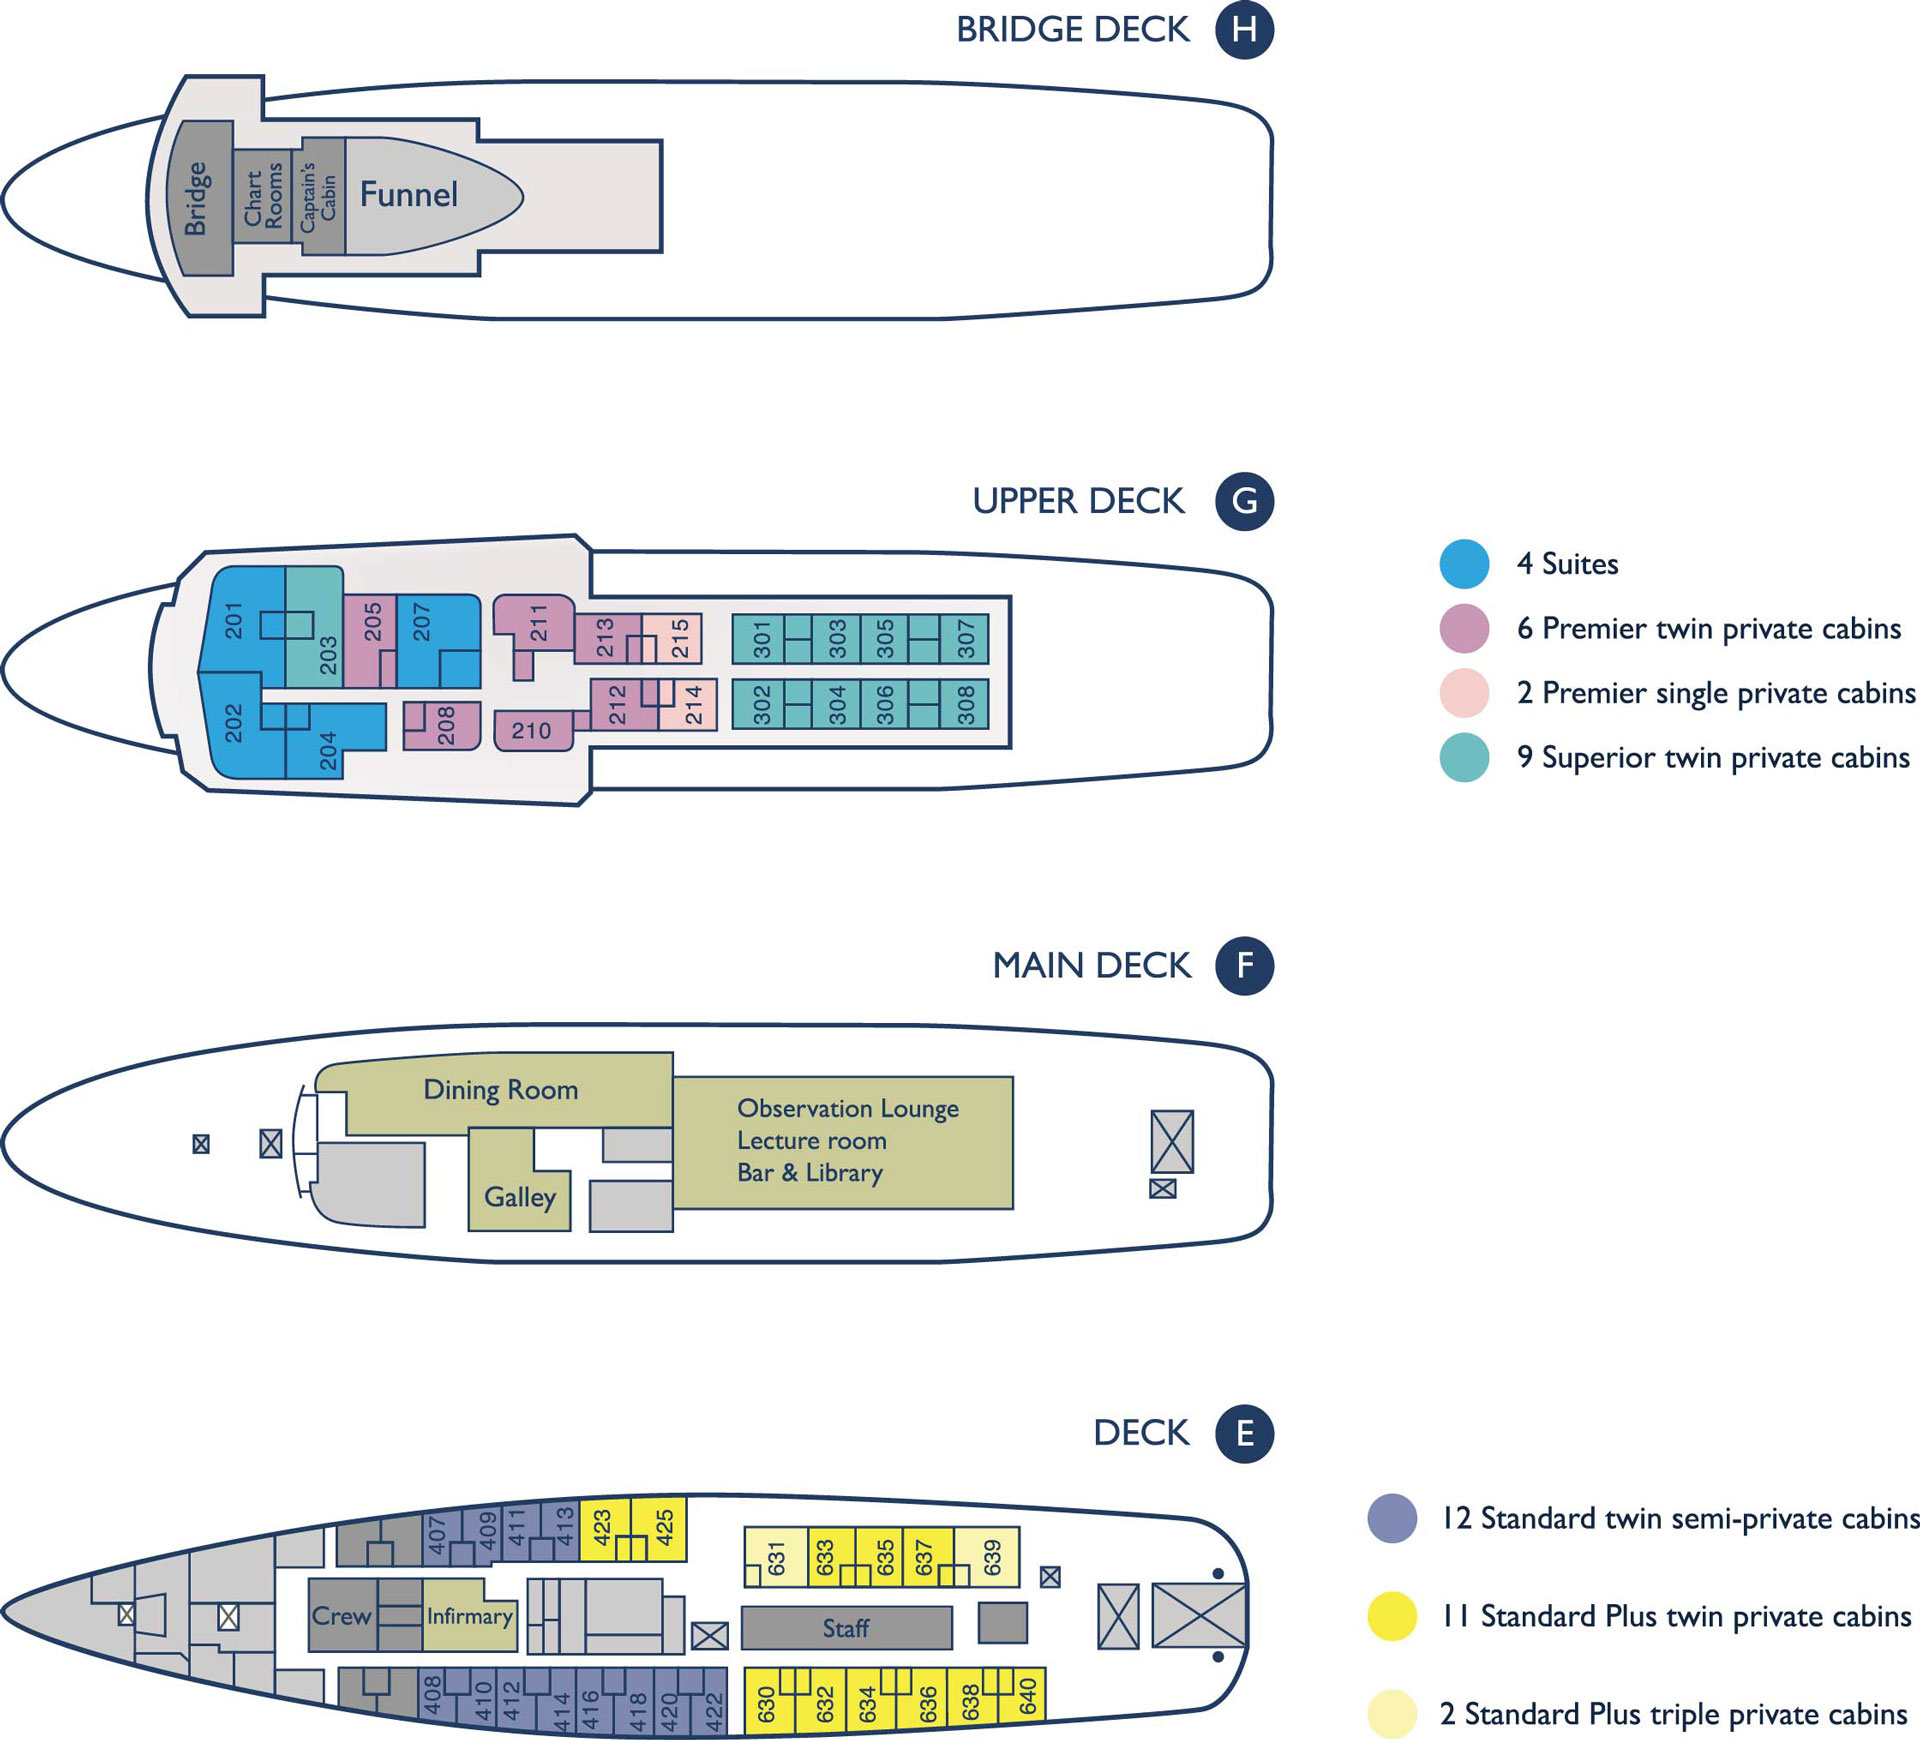 MV Ushuaia ship deck plan showing 4 levels in detail with suites, premier twin, premier single, superior twin, standard twin, standard plus twin & standard plus triple cabins.